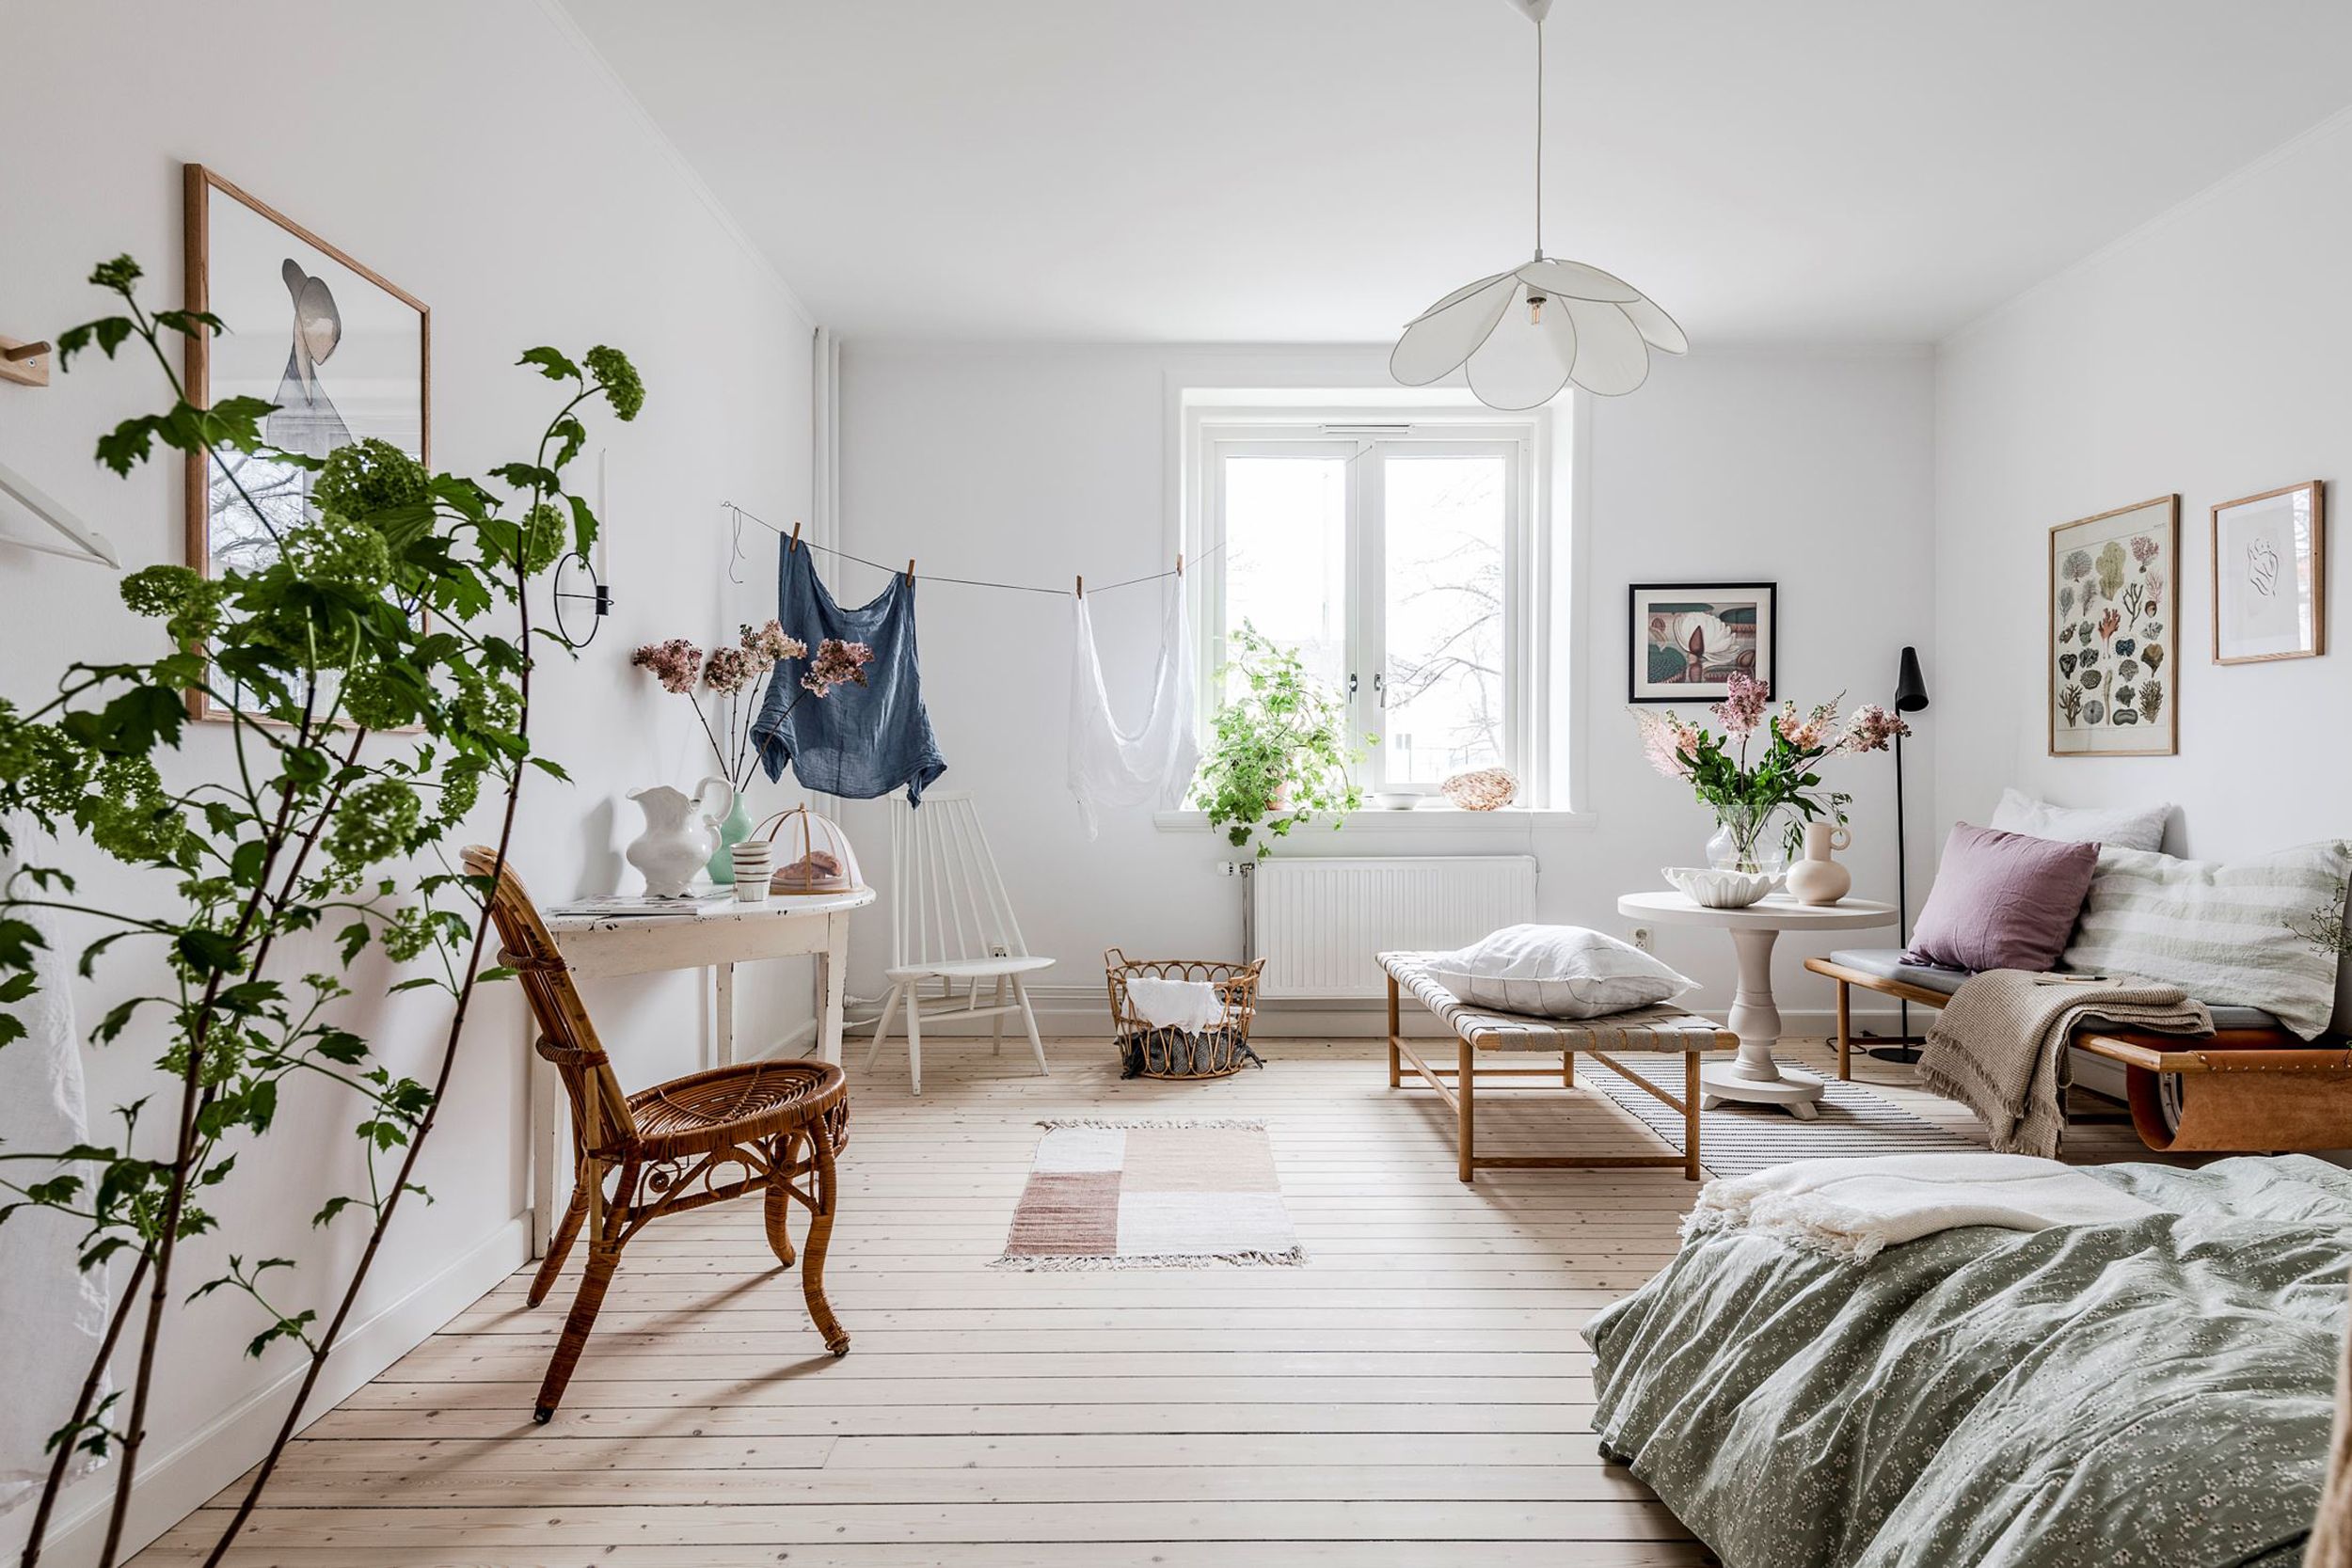 Un estudio de estilo nórdico y vintage - Casas pequeñas